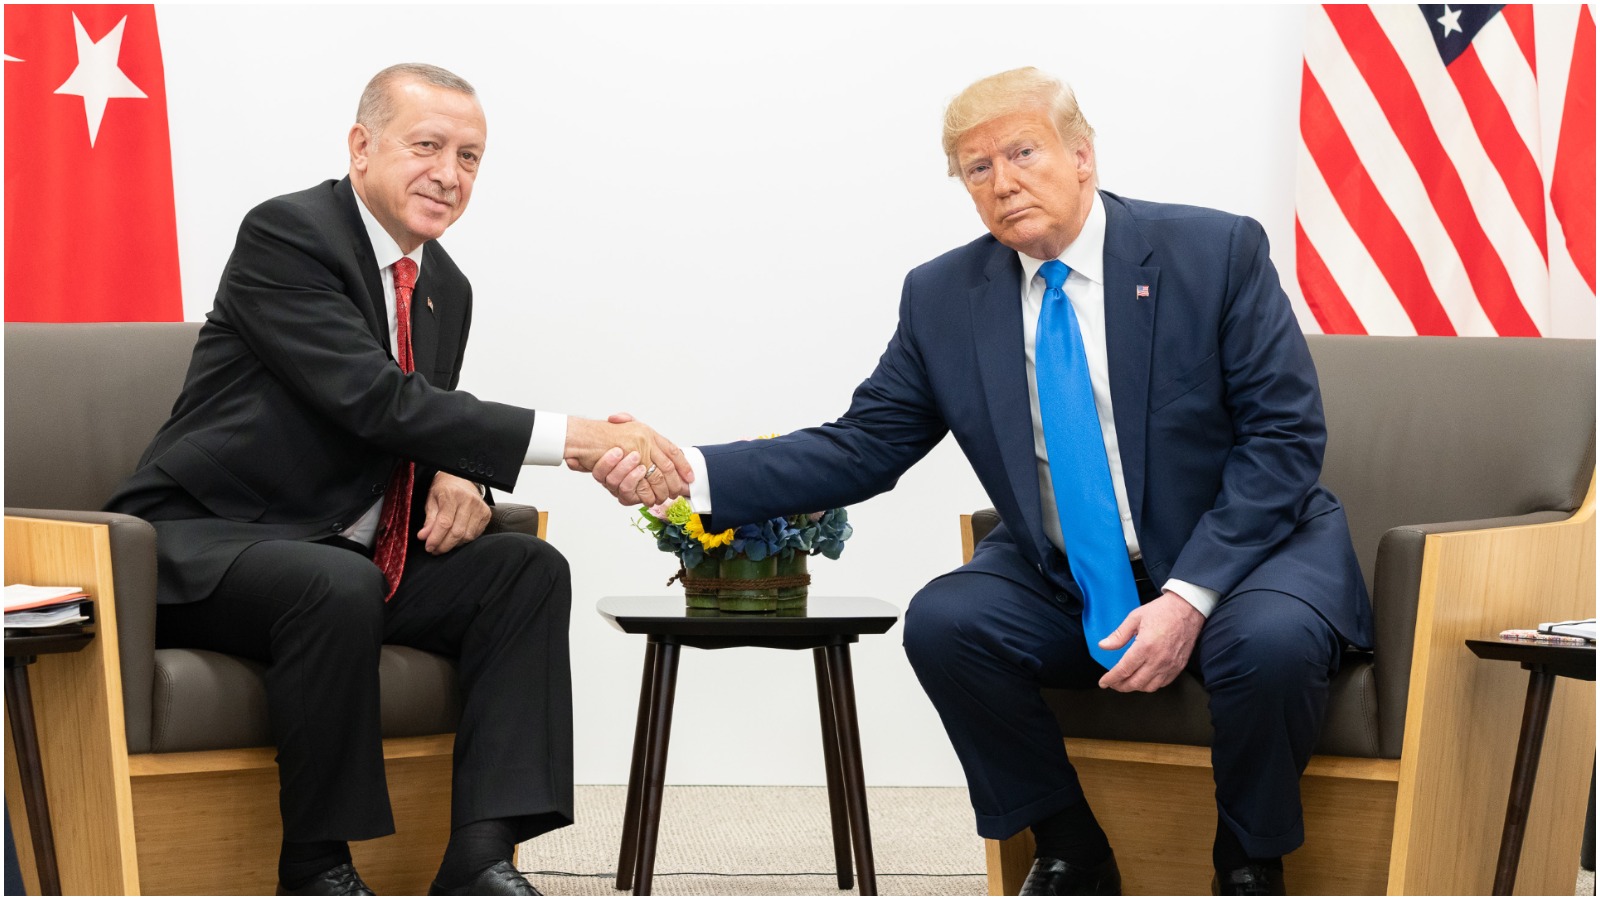 Niels Jespersen: Den mest oversete konsekvens af Trumps tilbagetrækning i Syrien er Erdogans styrkede evne til at sætte Europa på plads